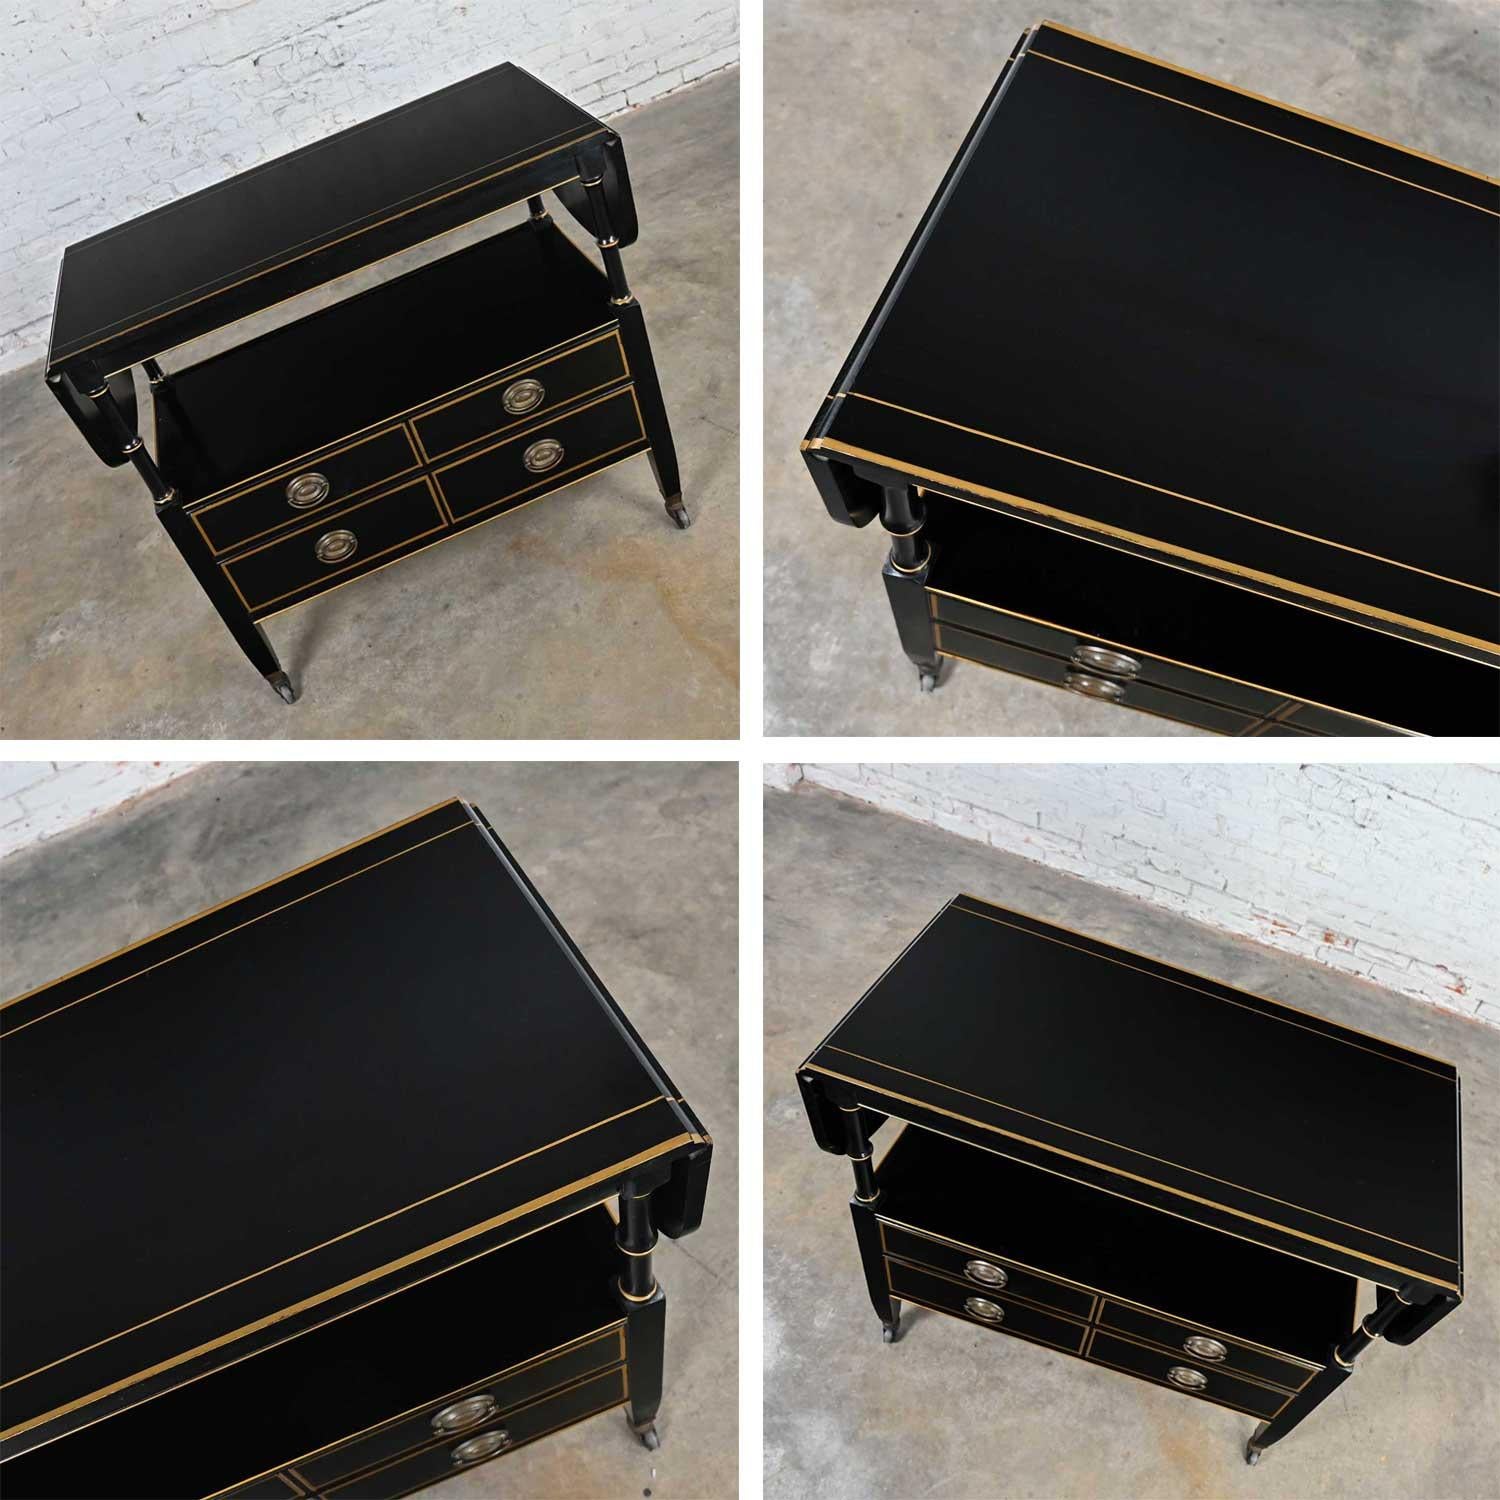 Regency Revival Mid-20th C. Regency Style Drexel Black & Gold Drop Leaf Rolling Server Bar Cart For Sale